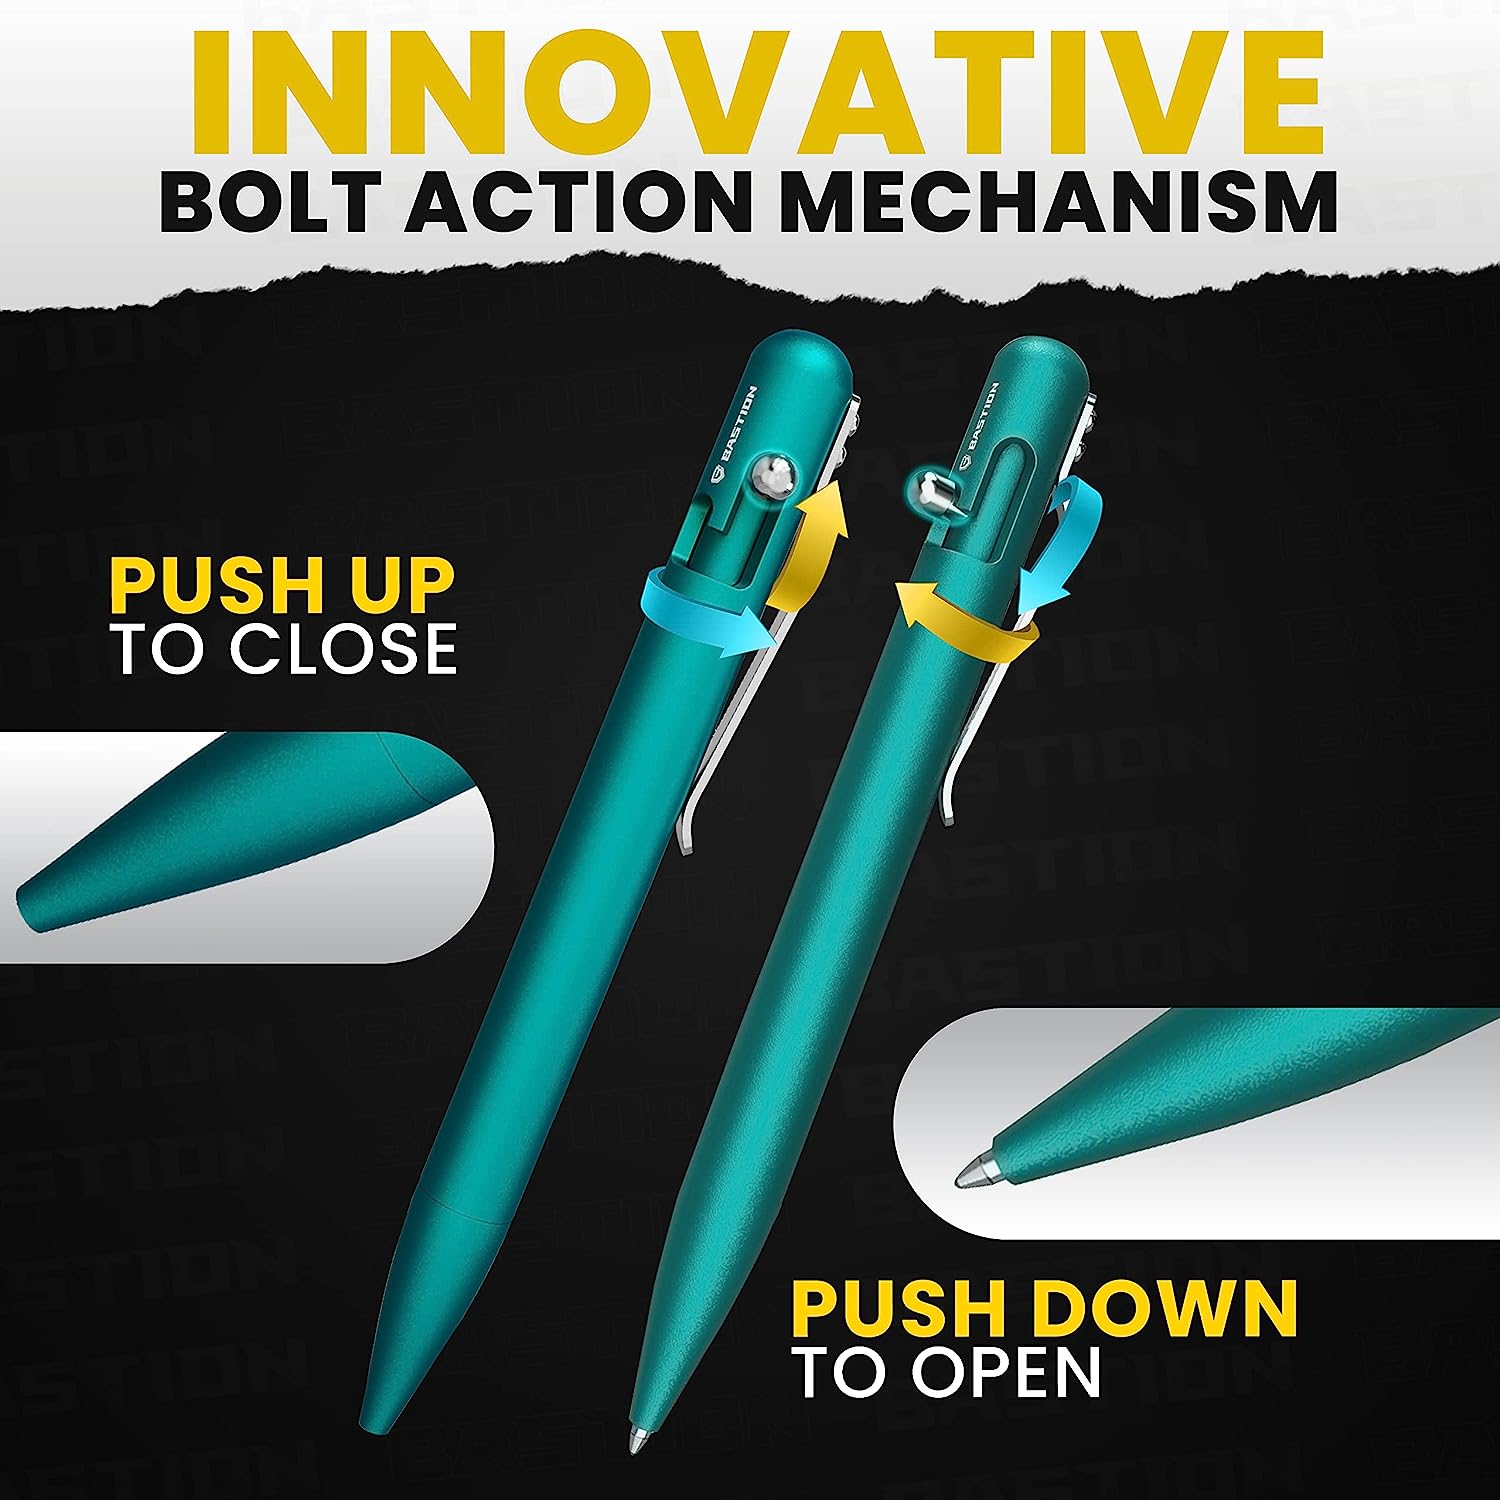 Aluminum - Bolt Action Pen by Bastion® - Bastion Bolt Action Pen